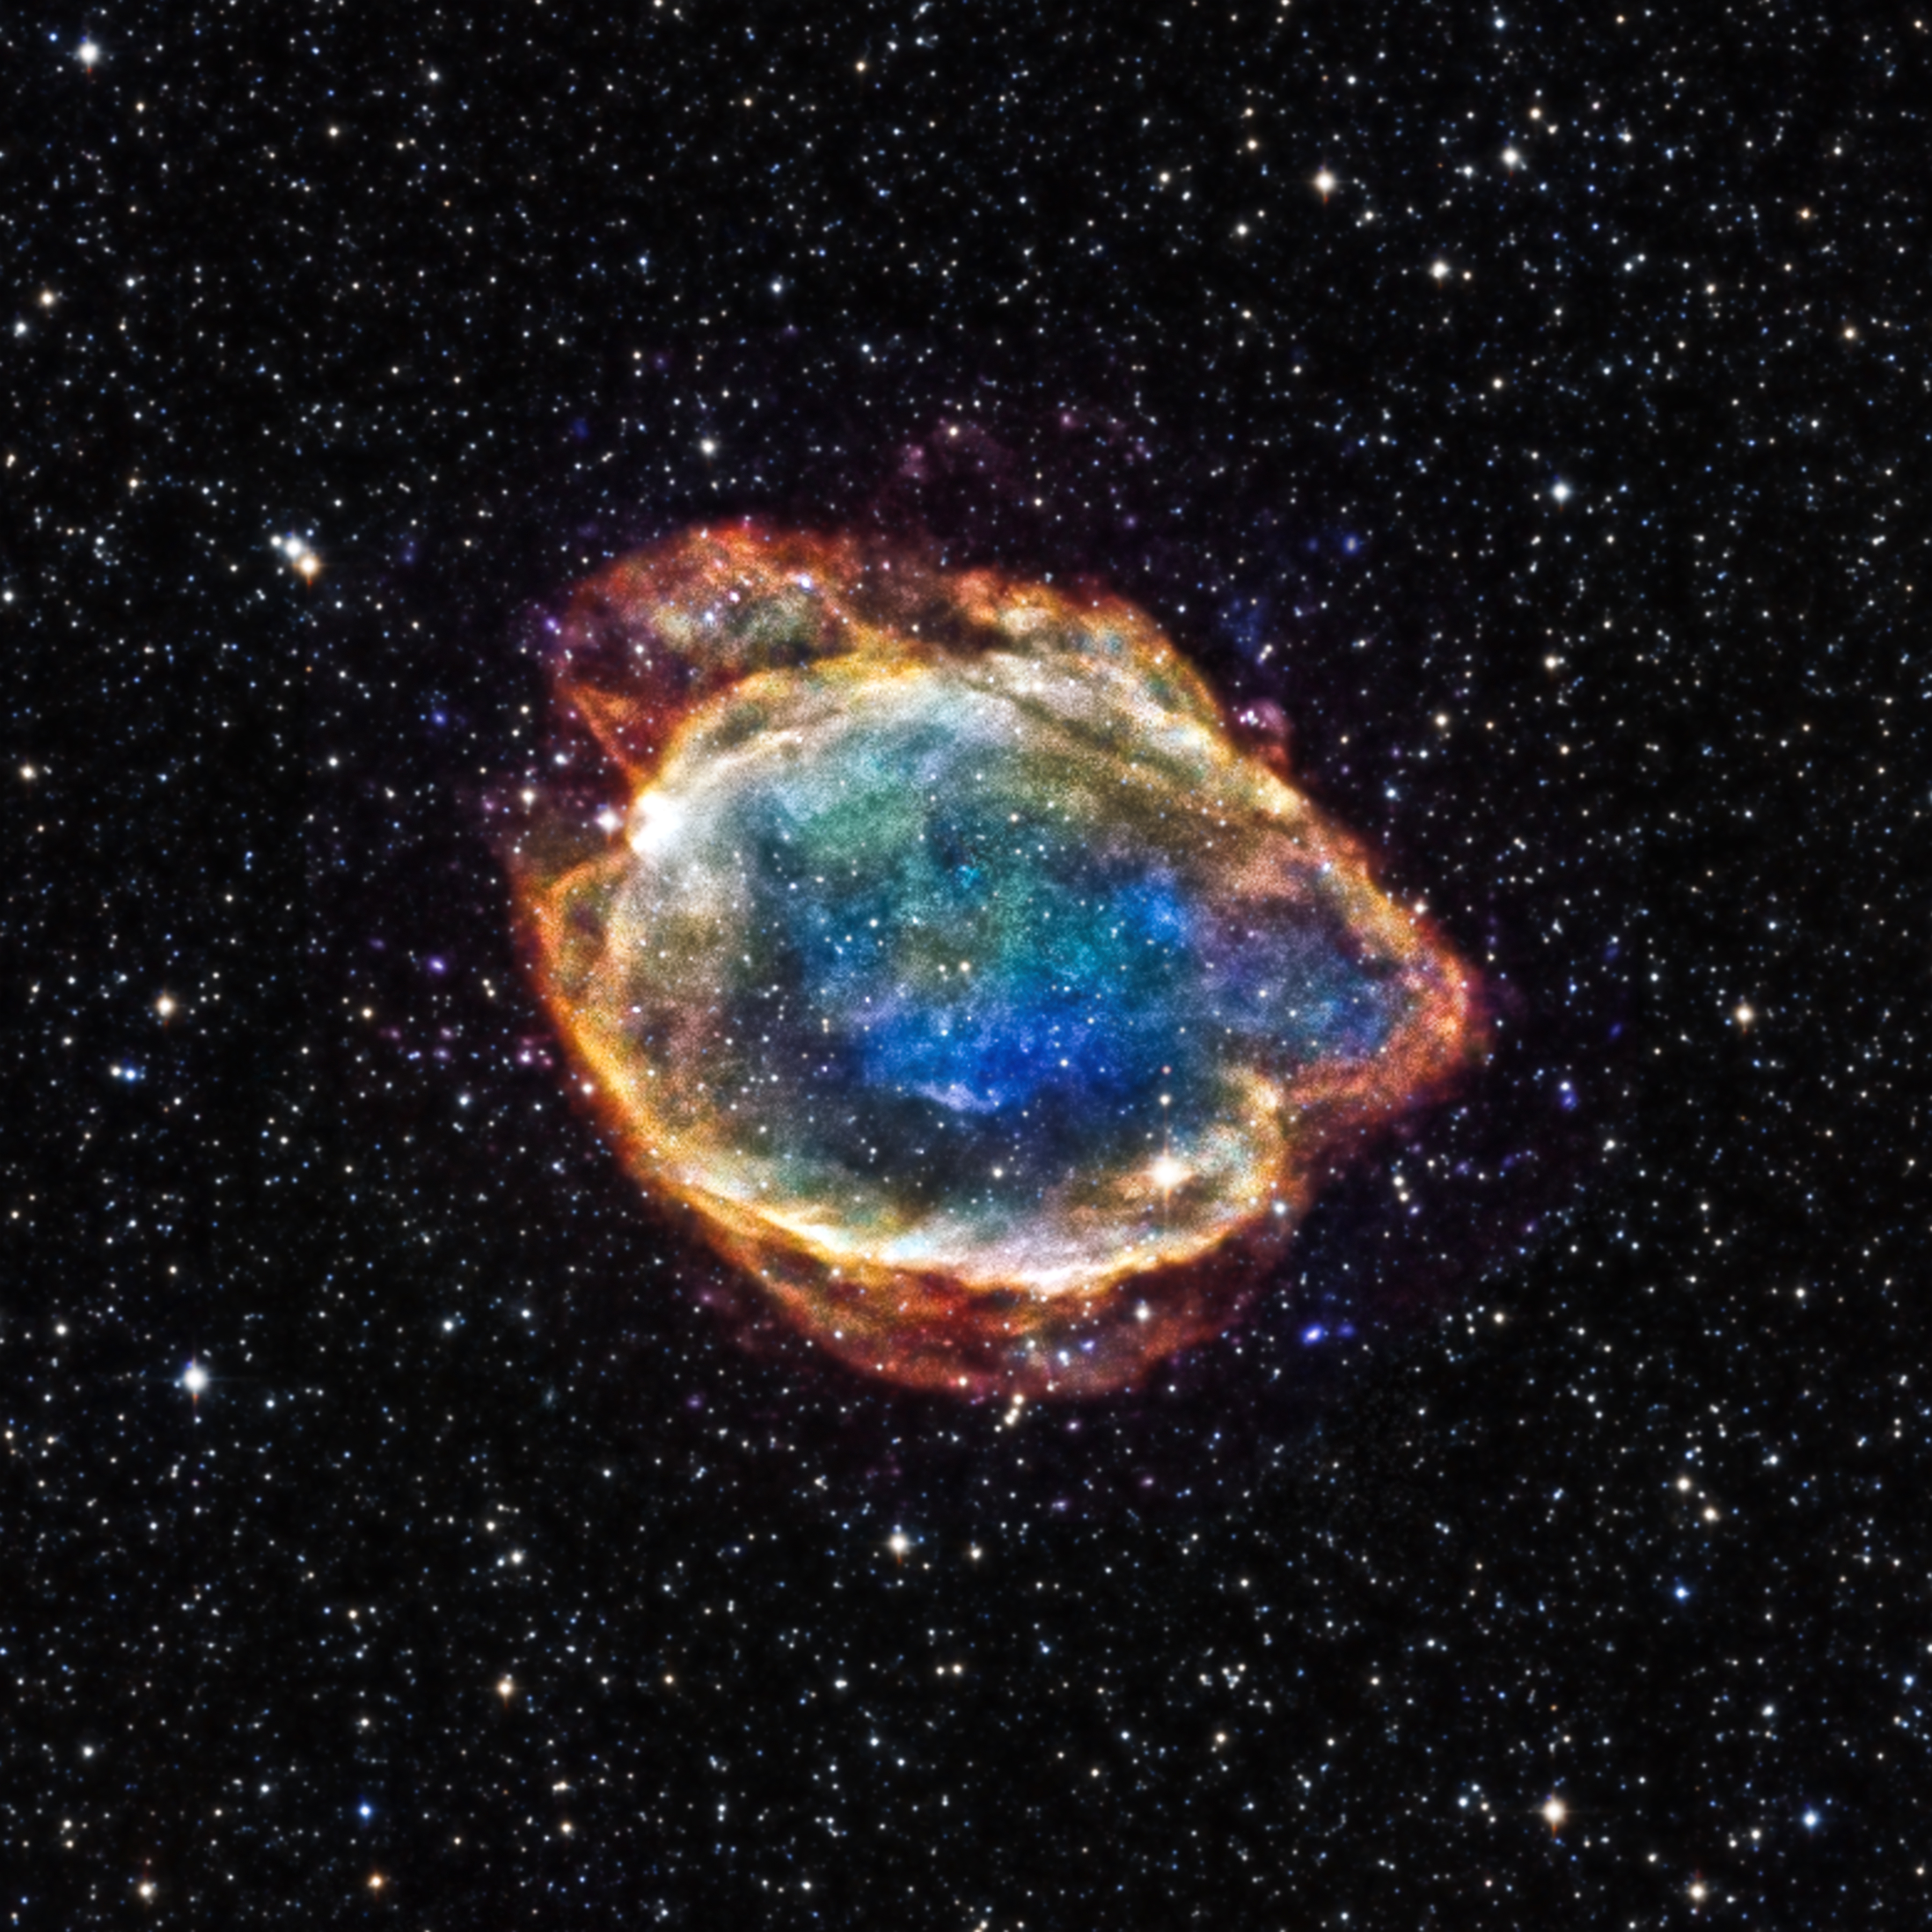 Supernova #12